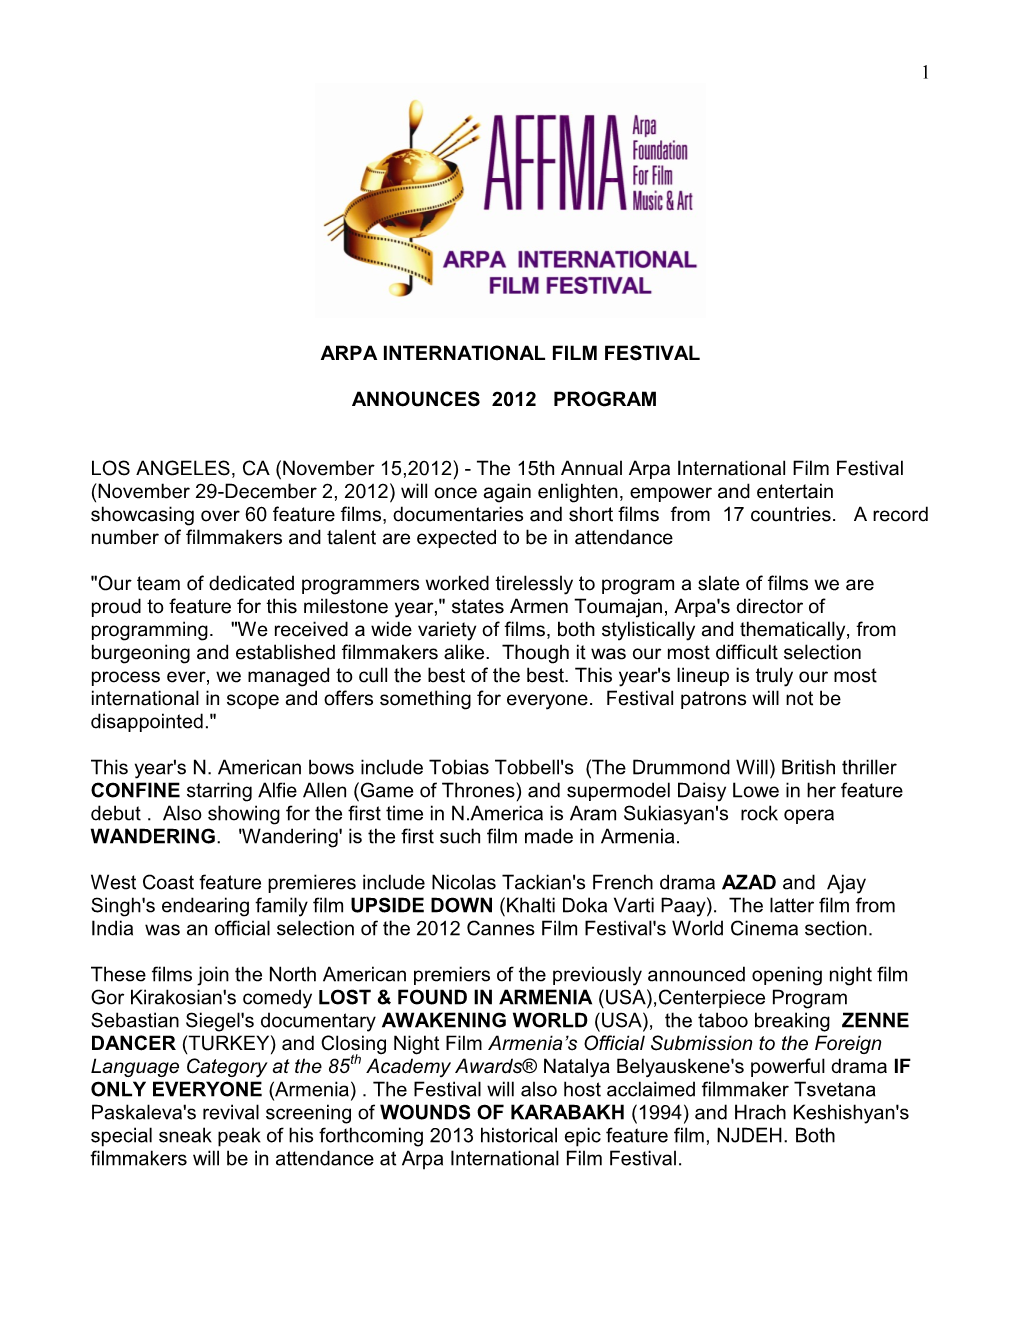 15Th Annual Arpa International Film Festival